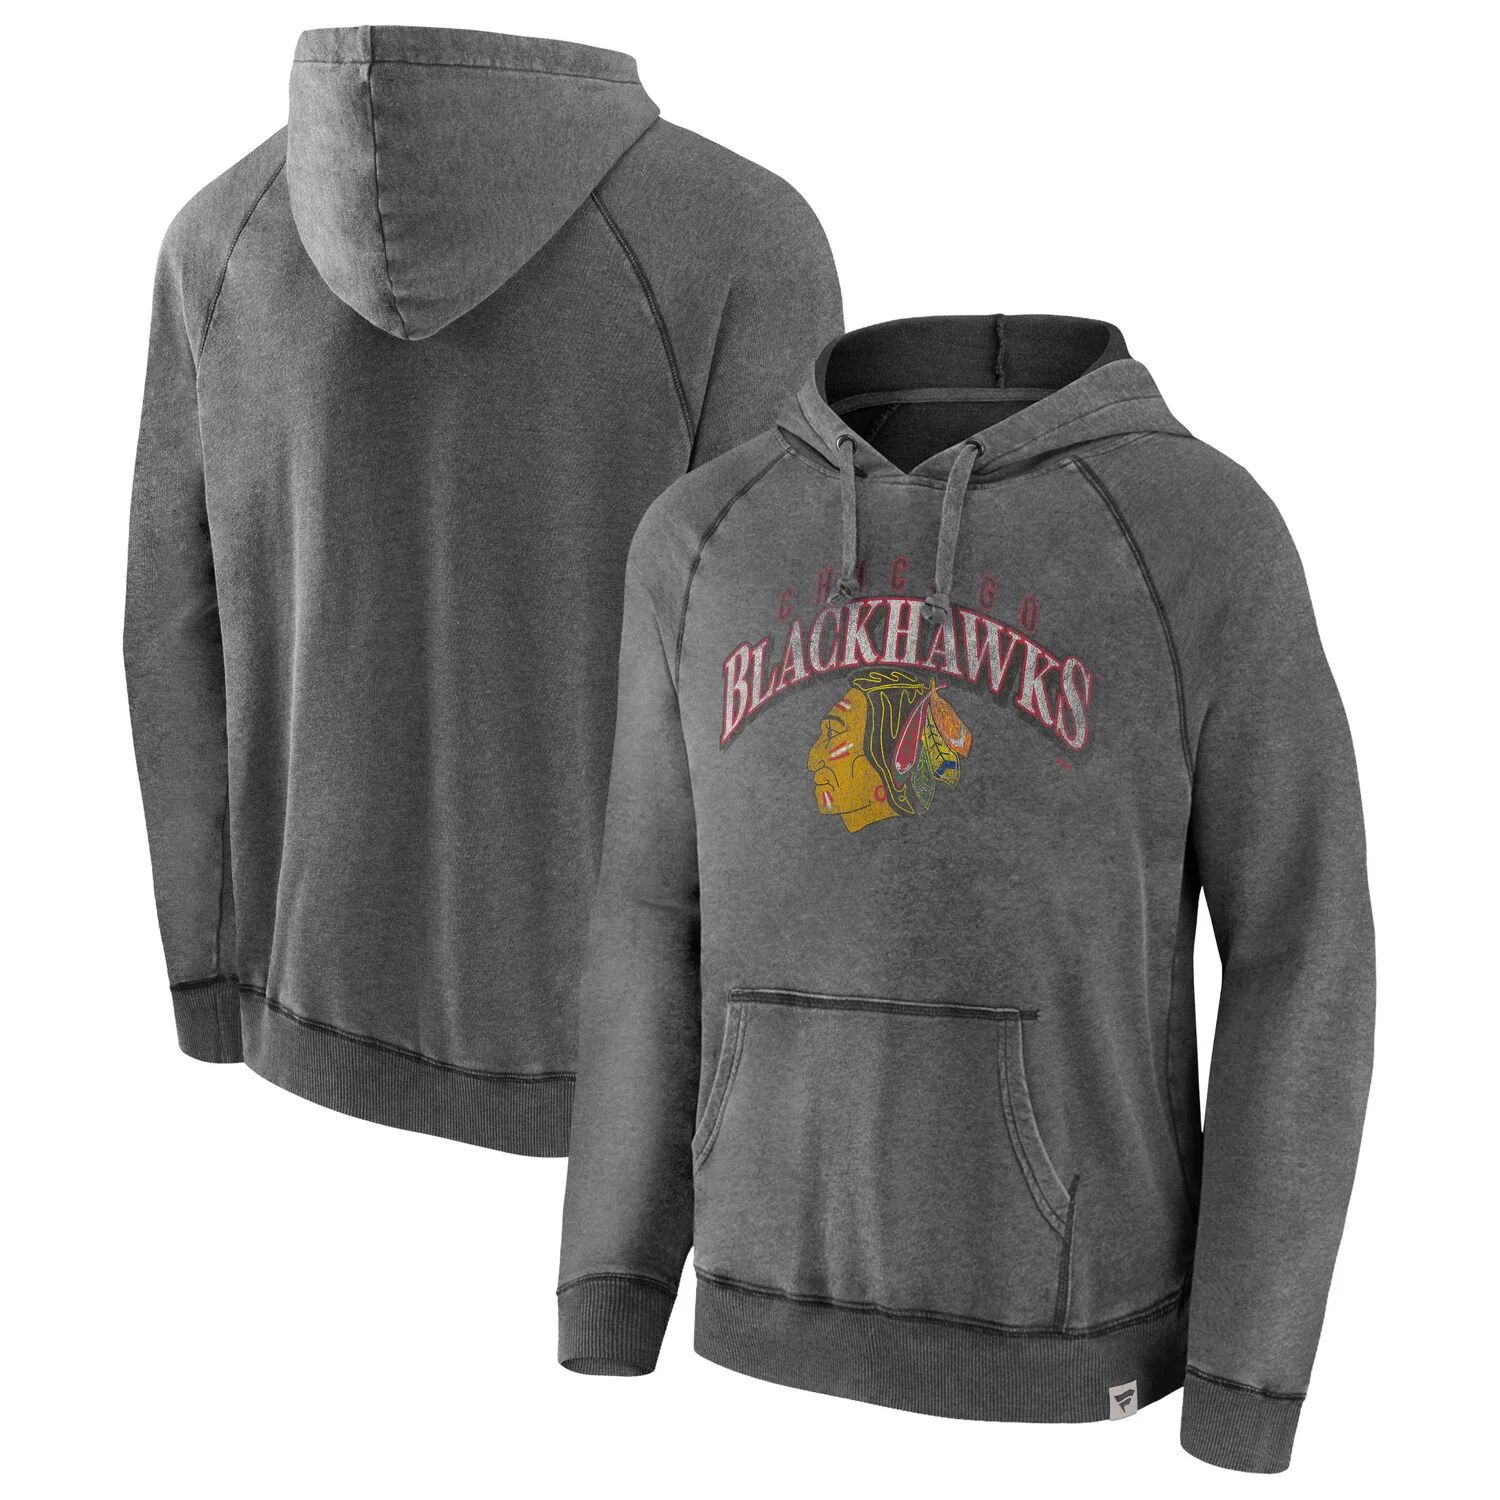 Мужской серый пуловер с капюшоном Fanatics с логотипом Chicago Blackhawks Heritage Broken Ice, пуловер реглан с капюшоном фото